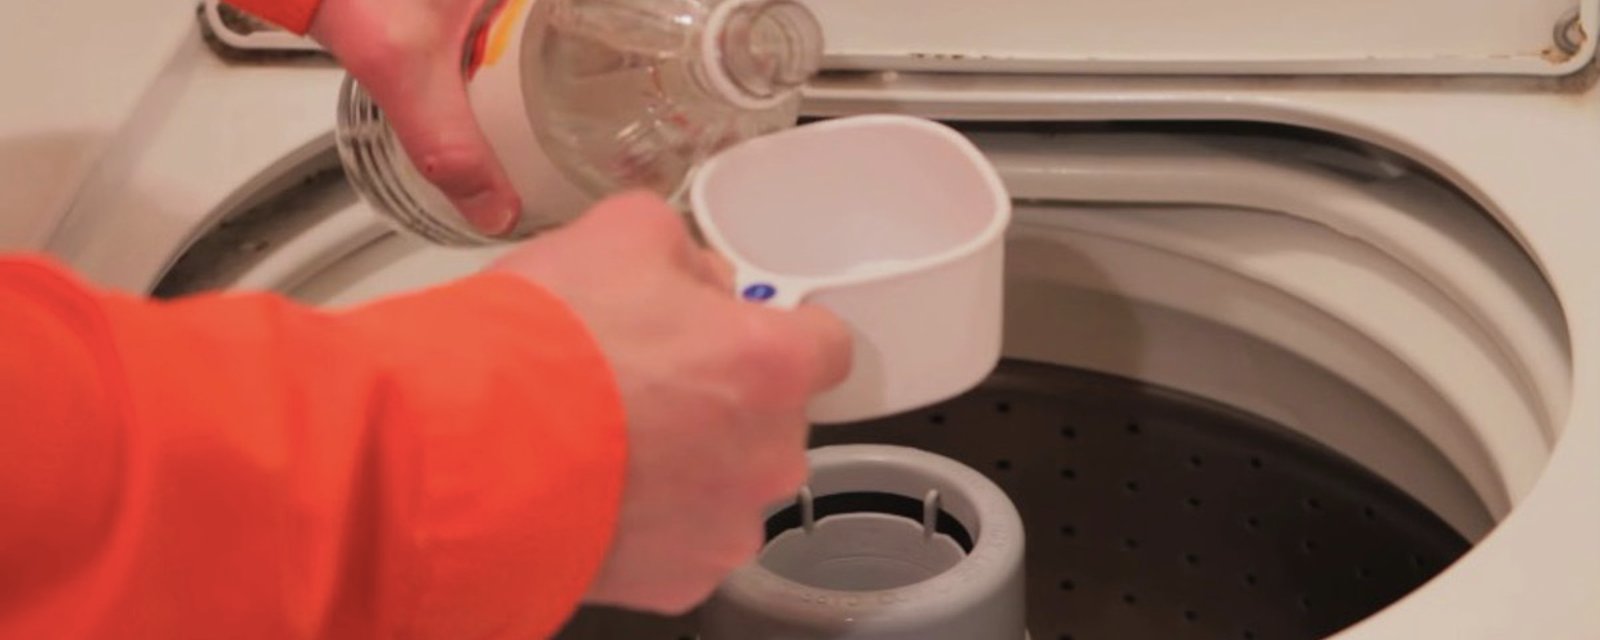 7 bonnes raisons d'ajouter du vinaigre blanc dans la machine à chaque lessive